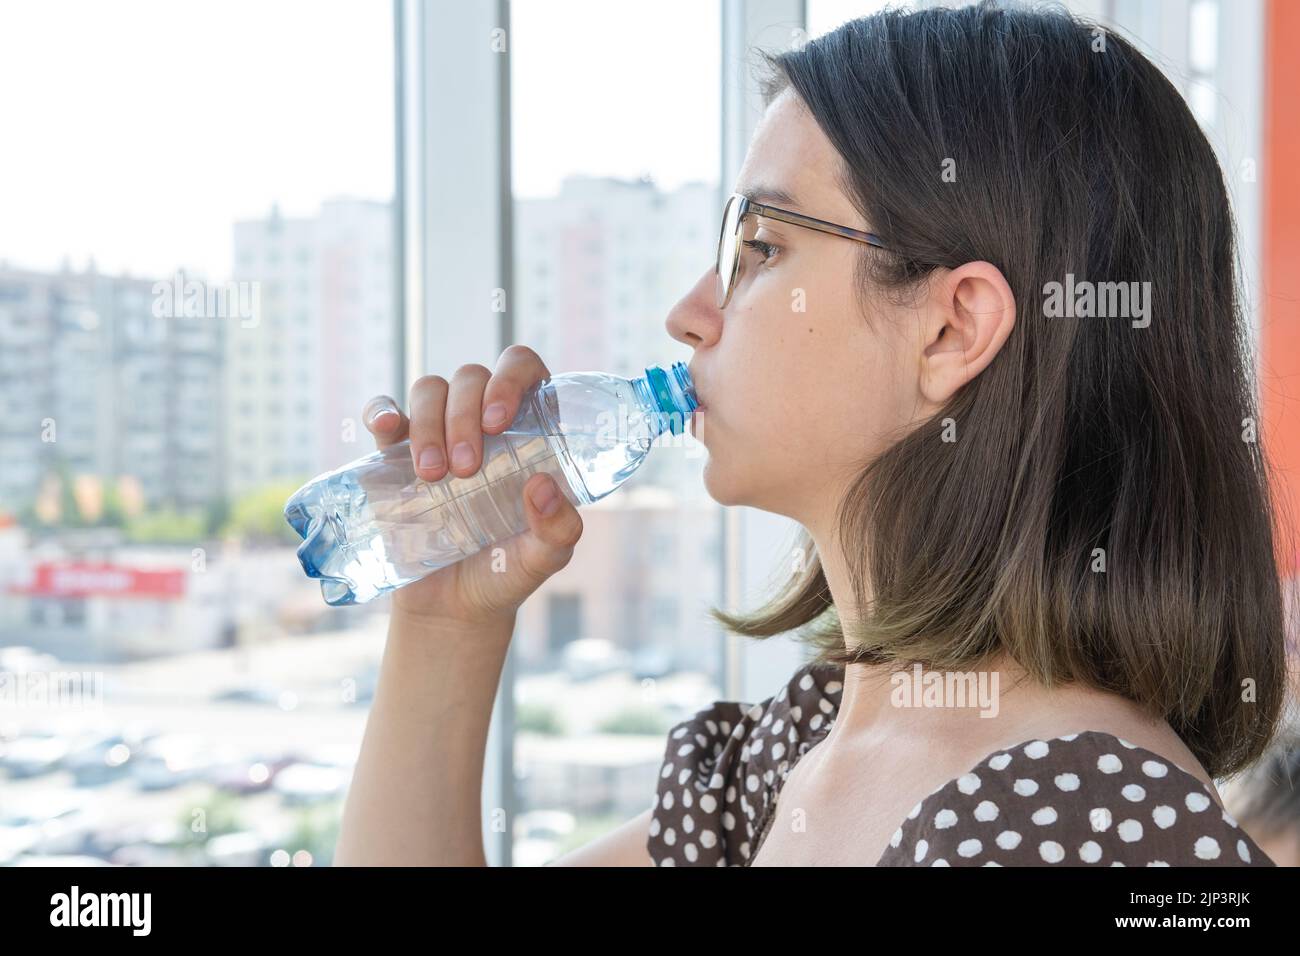 Ein schönes Studentenmädchen mit Gläsern trinkt Wasser aus einer Plastikflasche und blickt aus dem Fenster. Ein heißer, sonniger Tag. Auffüllen von Feuchtigkeit im Körper wi Stockfoto